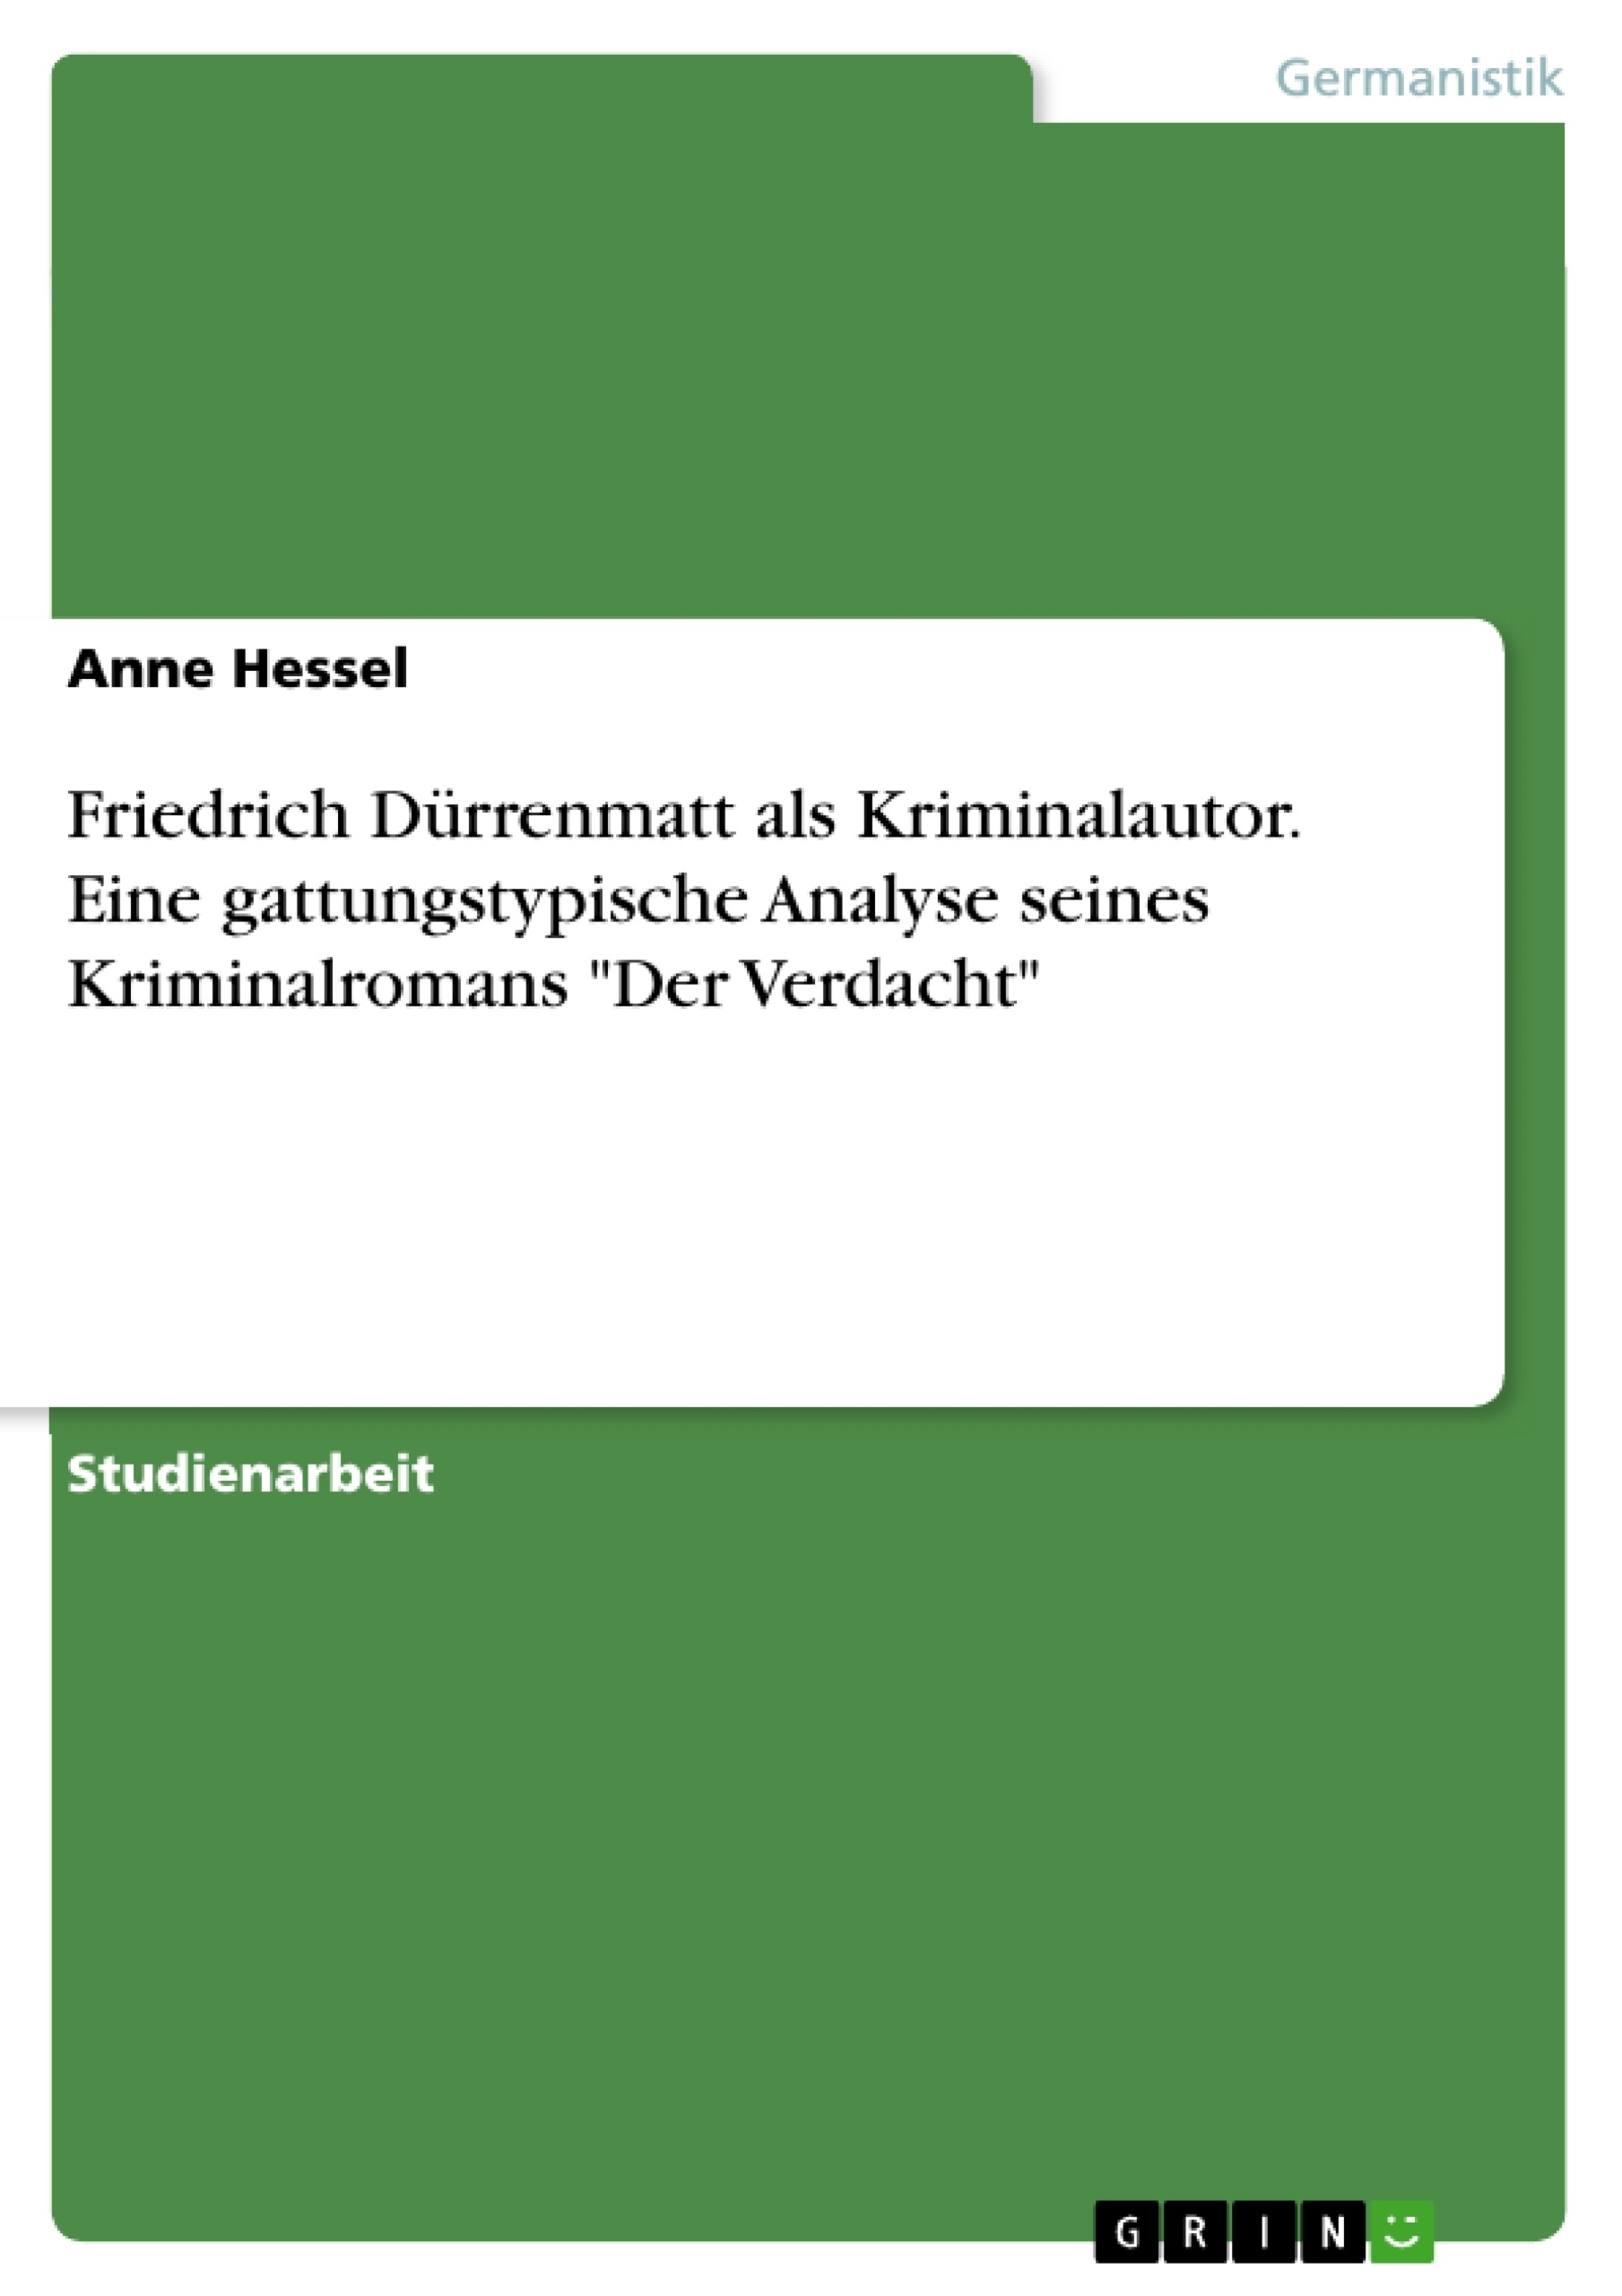 Título: Friedrich Dürrenmatt als Kriminalautor. Eine gattungstypische Analyse seines Kriminalromans "Der Verdacht"